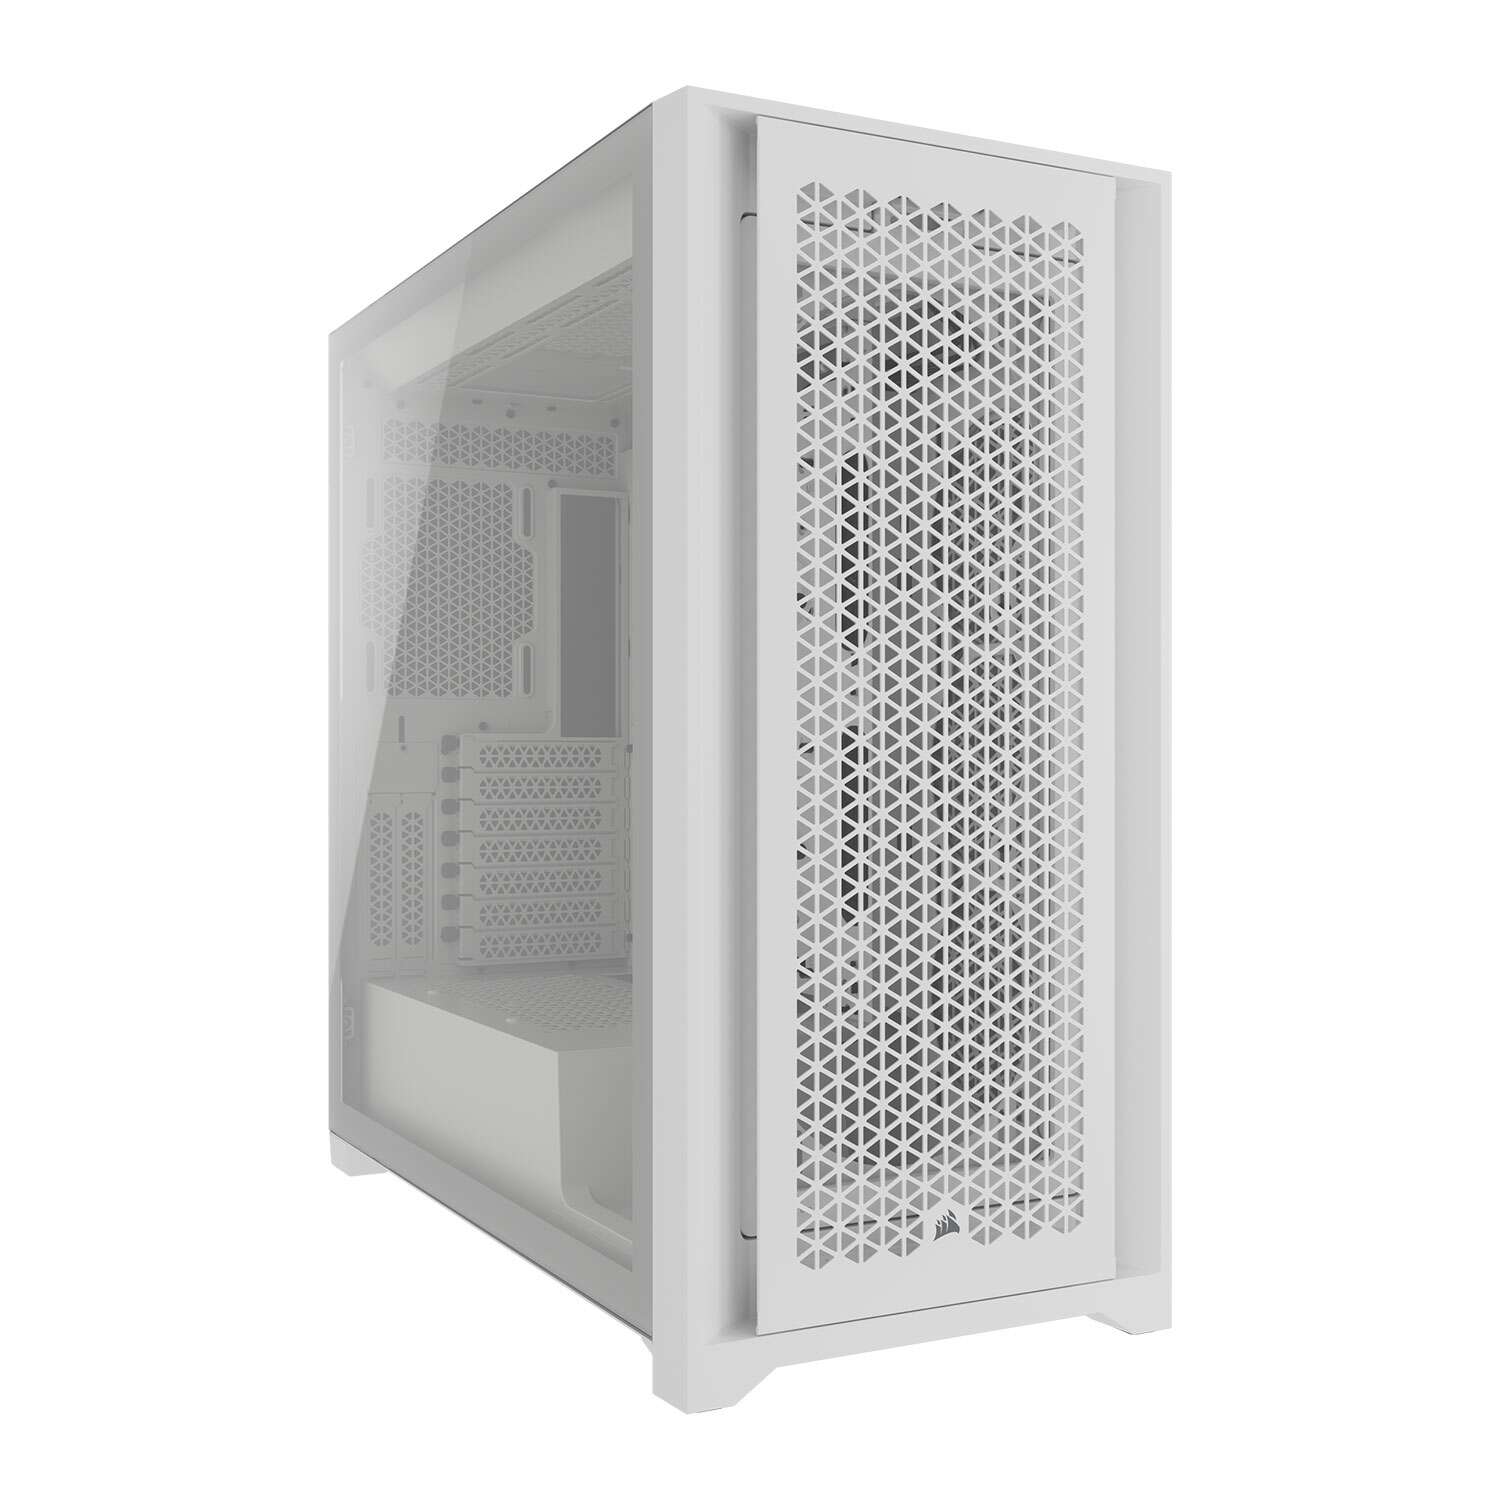 Corsair 5000d core airflow tempered glass számítógépház - fehér